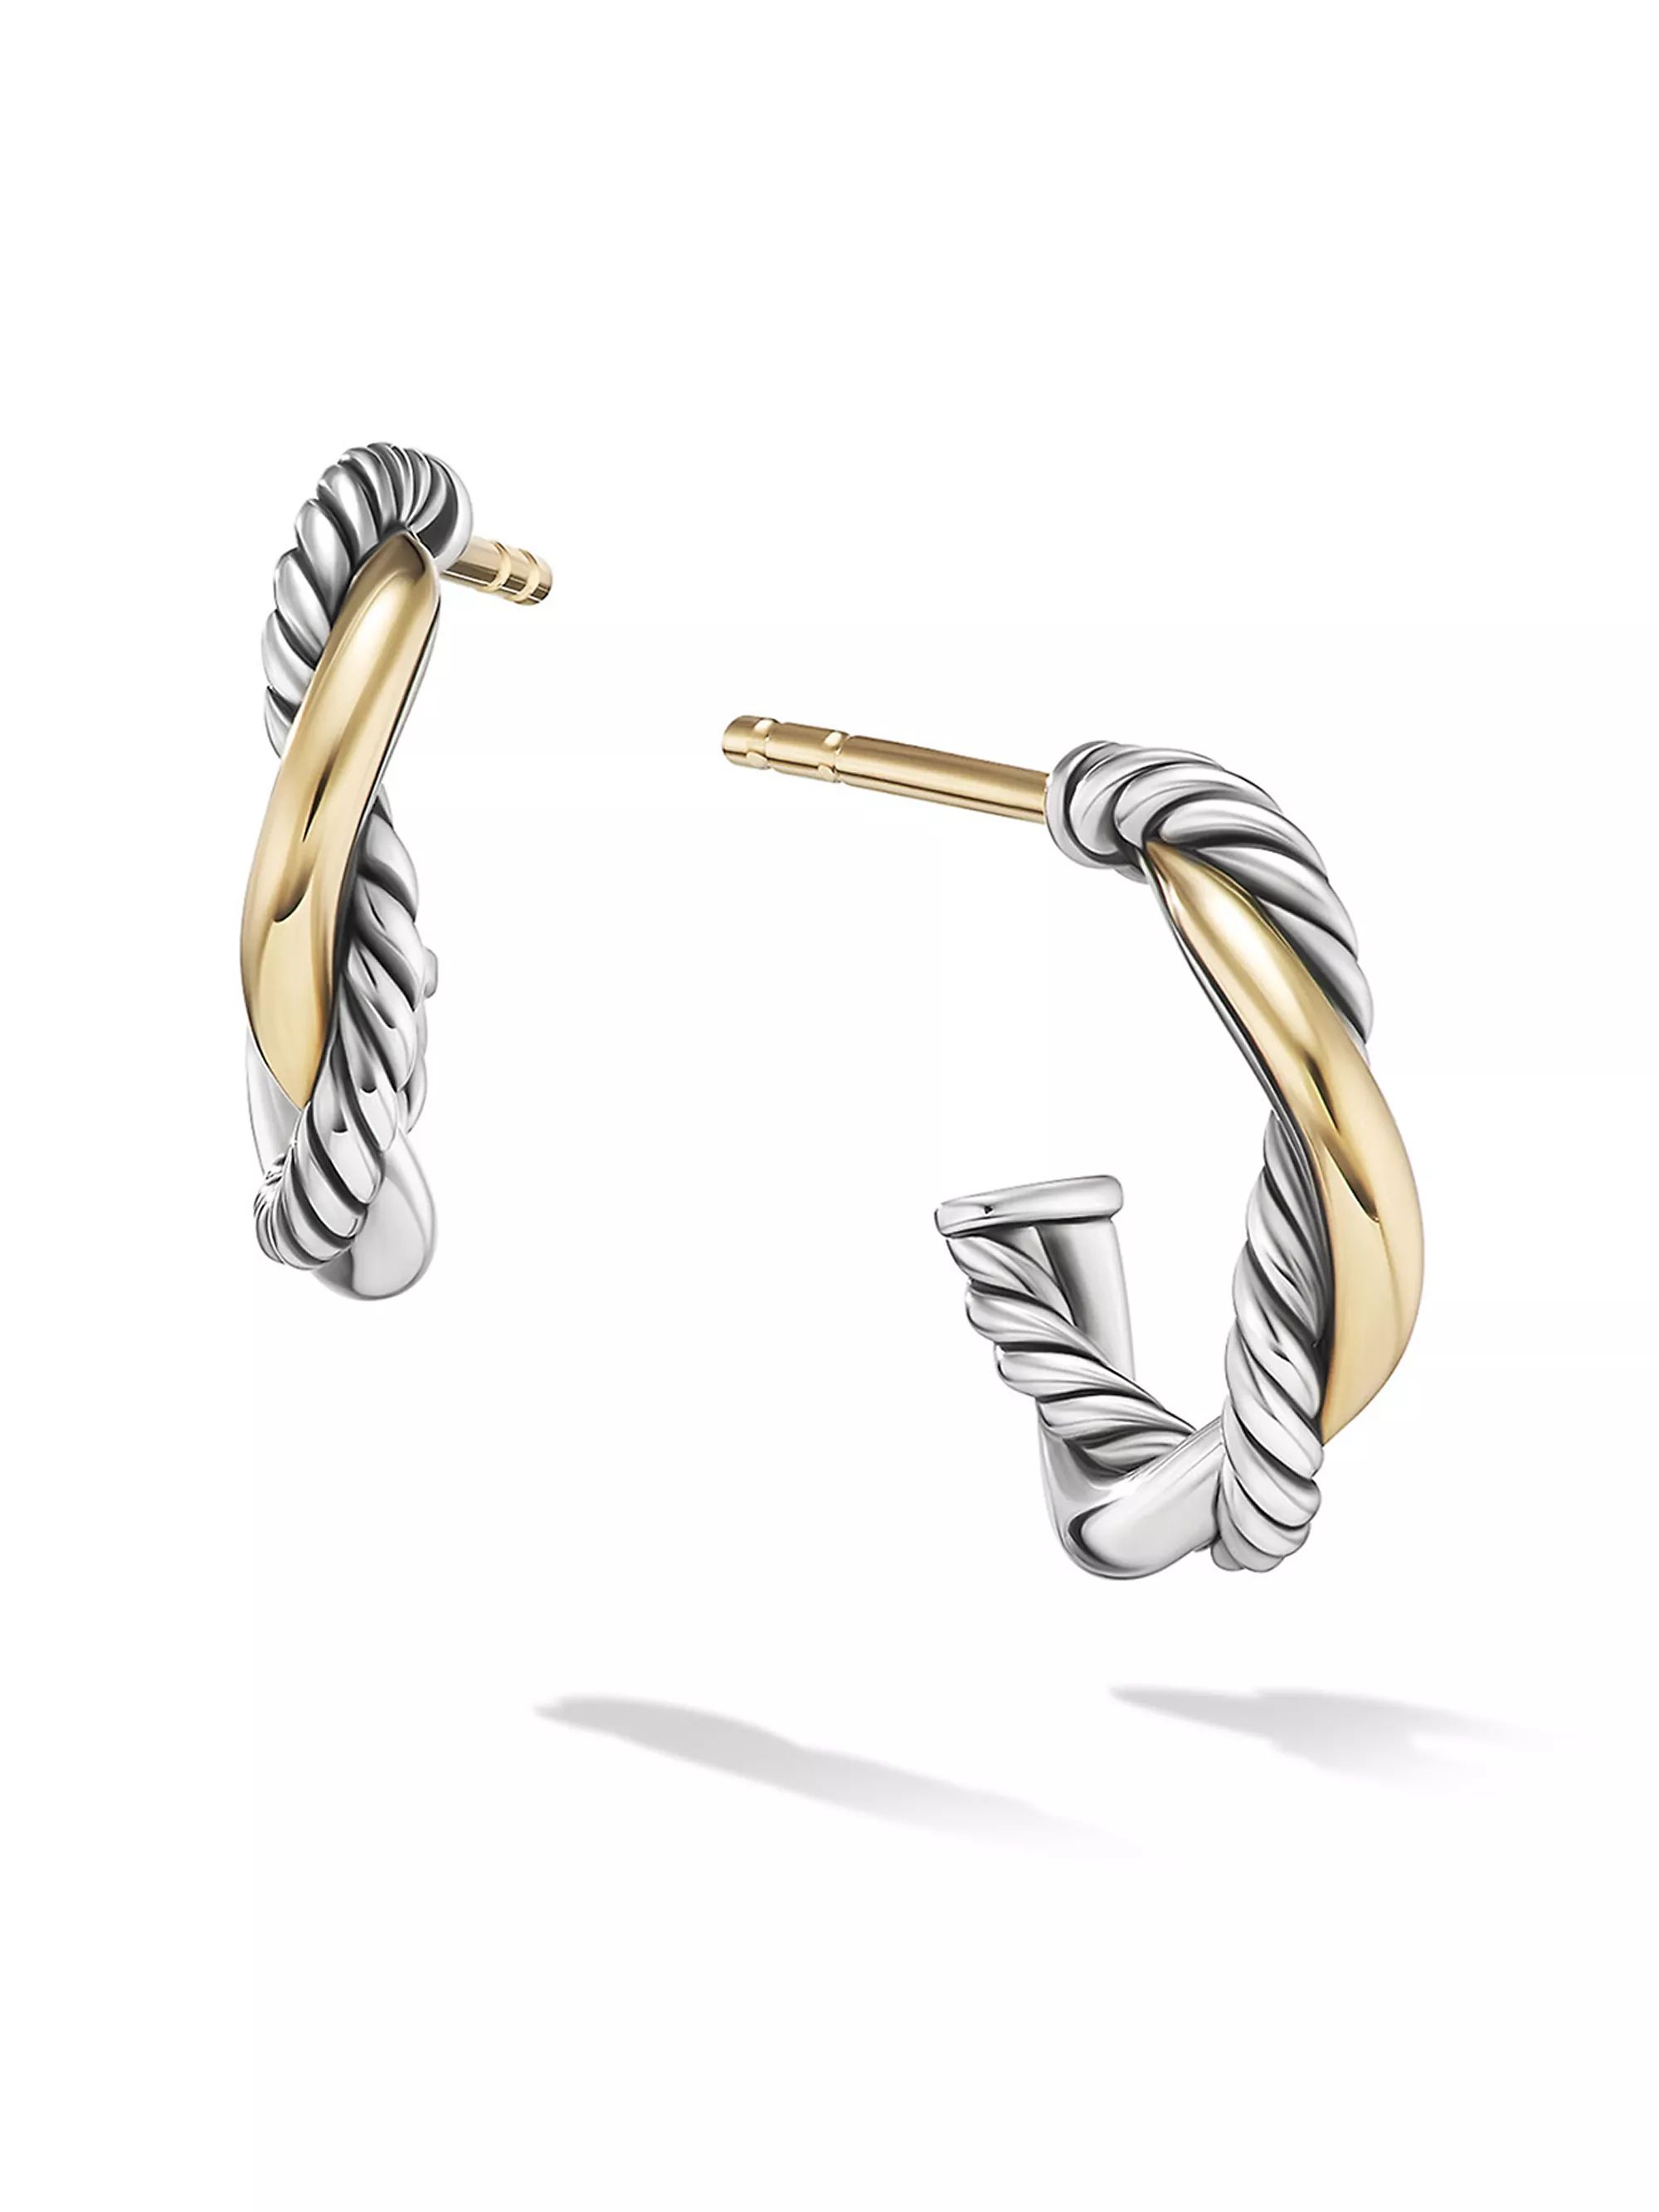 Petite Infinity Huggie Hoop Earrings in Sterling Silver with 14K Yellow Gold | Saks Fifth Avenue